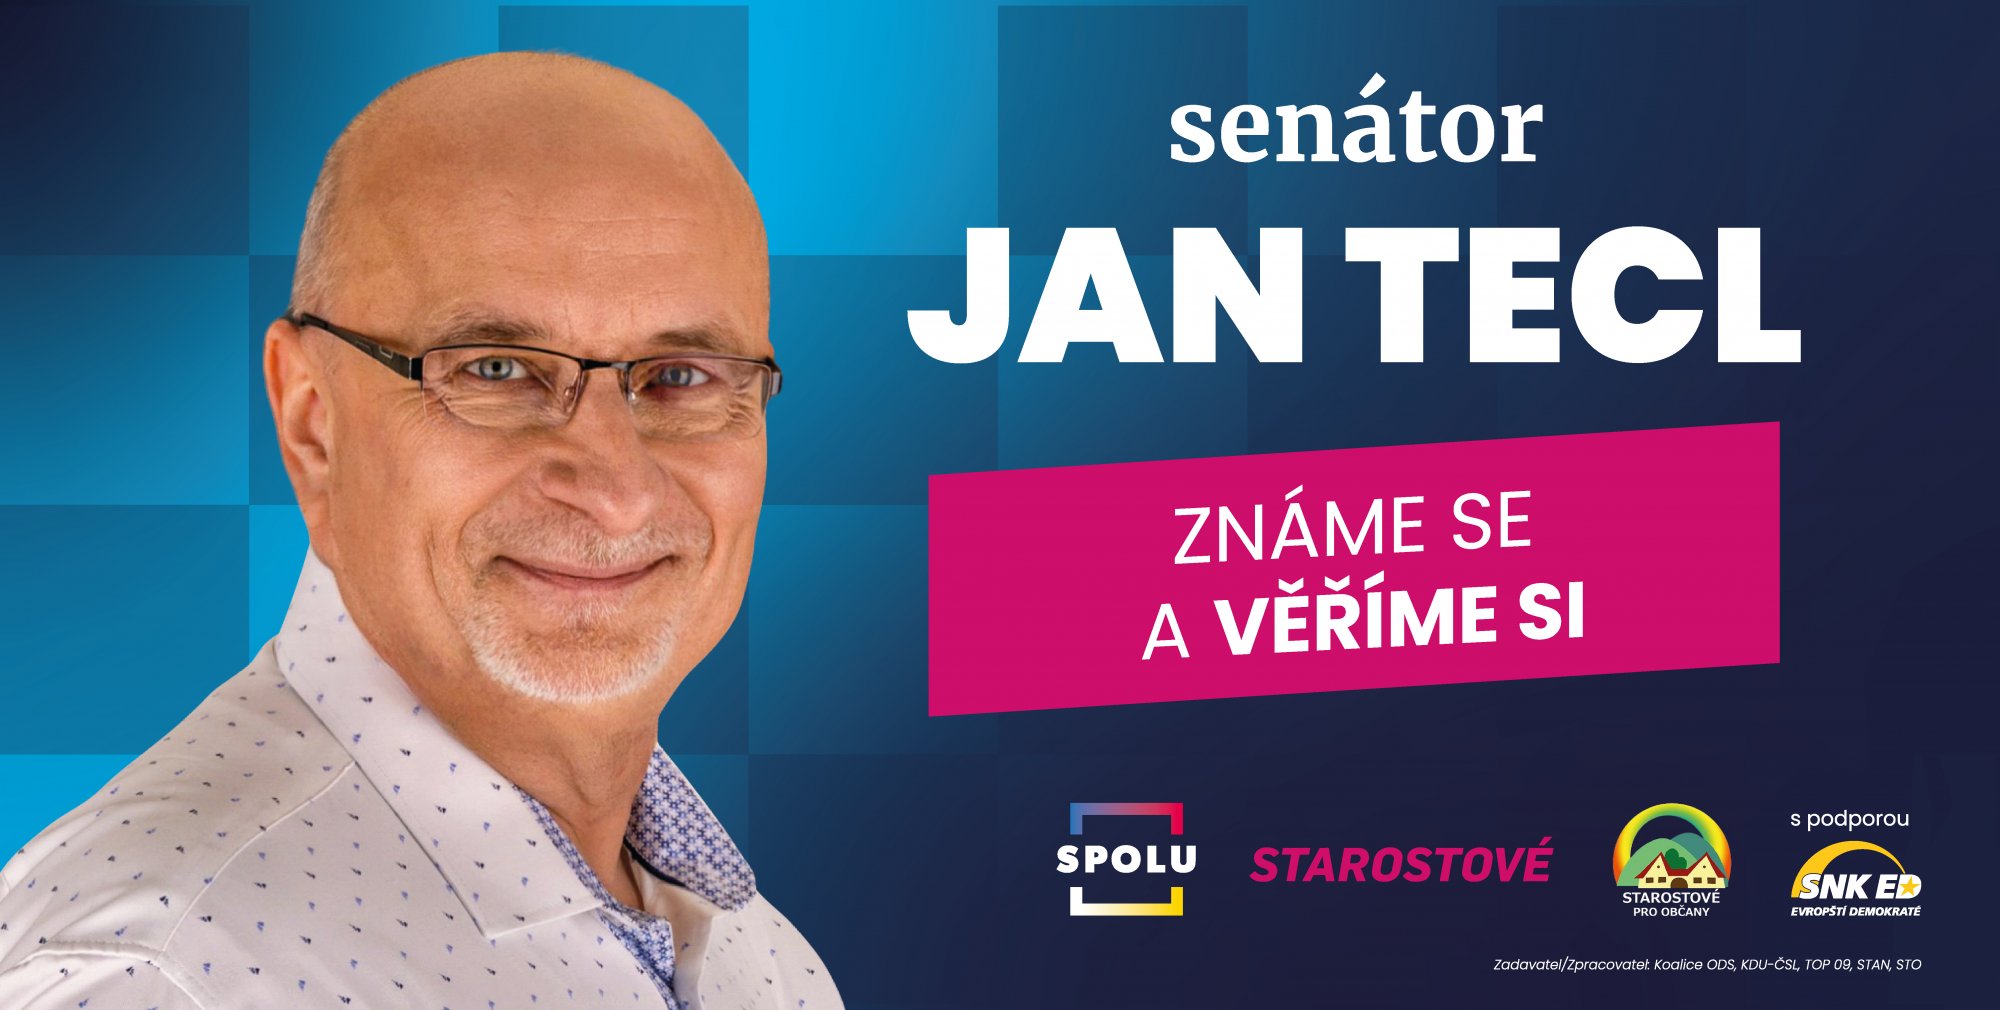 Známe se a věříme si, říká k opětovné kandidatuře do Senátu PČR senátor Jan Tecl